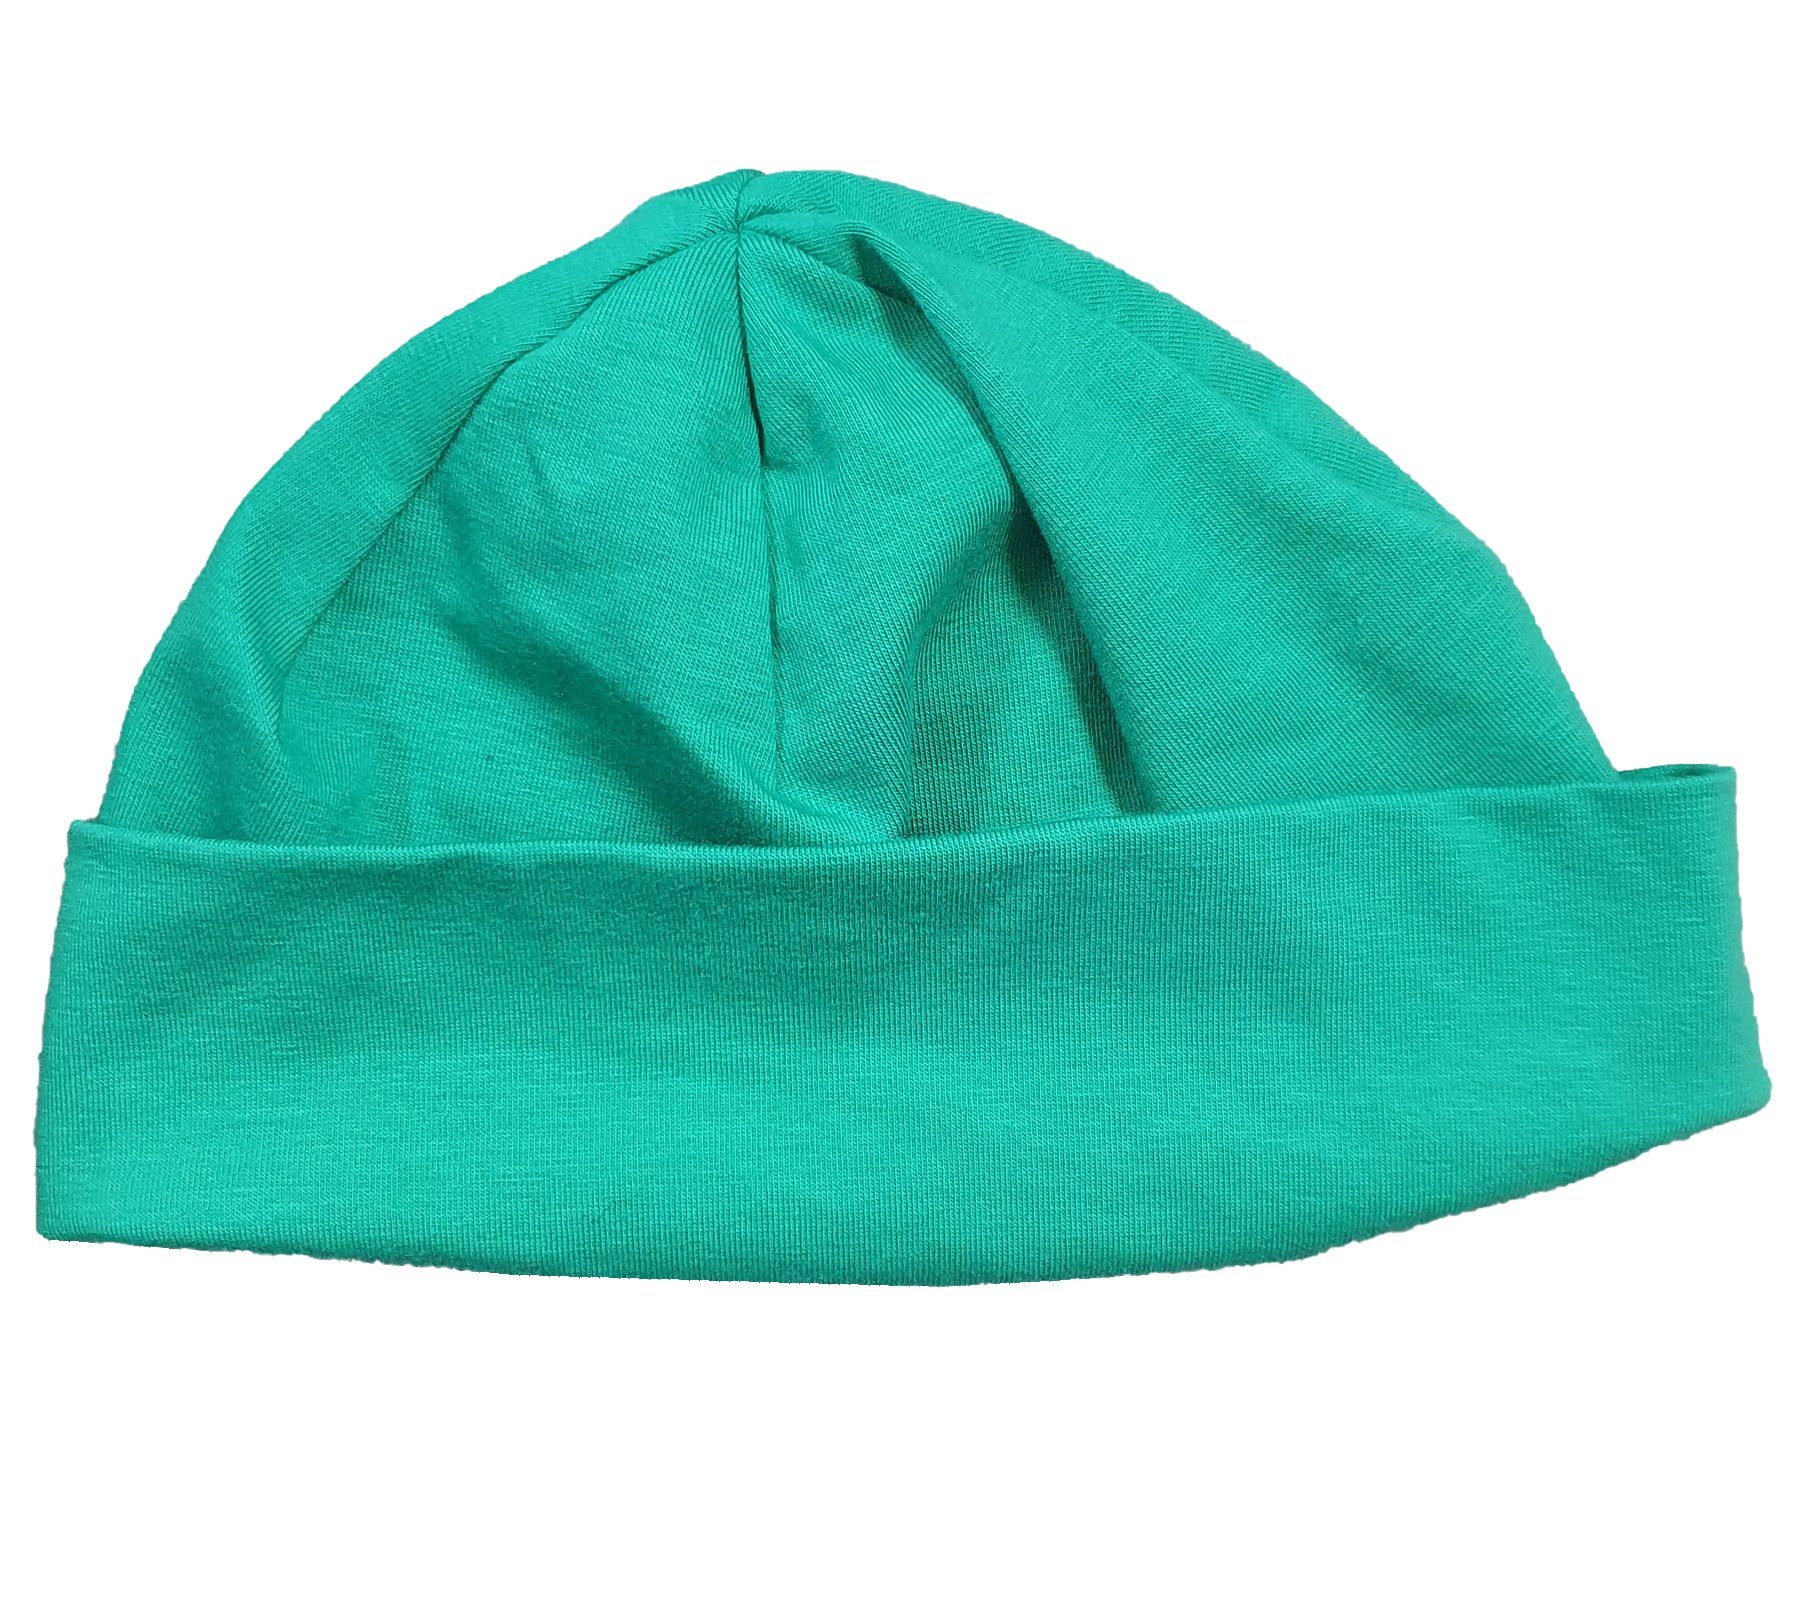 MAXIMO Jerseymütze maximo Kleinkinder Jersey-Mütze weiche Kinder Umschlag- Mütze Kopfbedeckung Grün